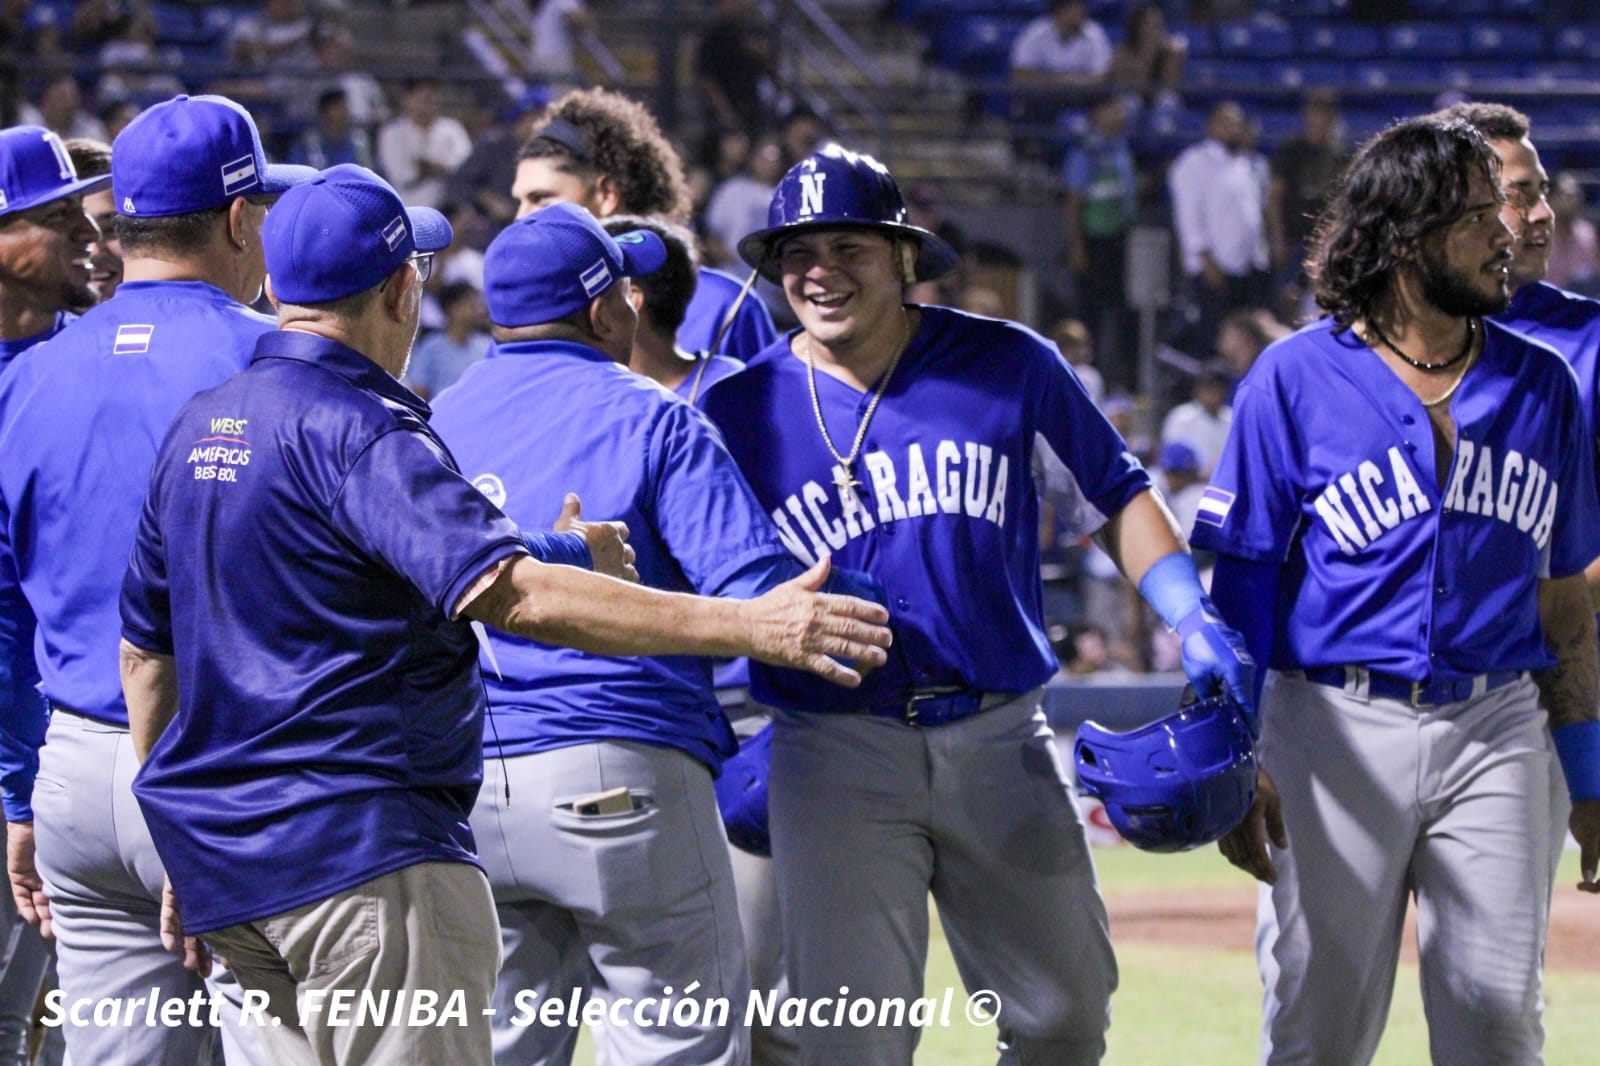 Elian Rayo recibido por sus compañeros tras conectar homerun con bases llenas. Fotografía de Scarlett R. FENIBA